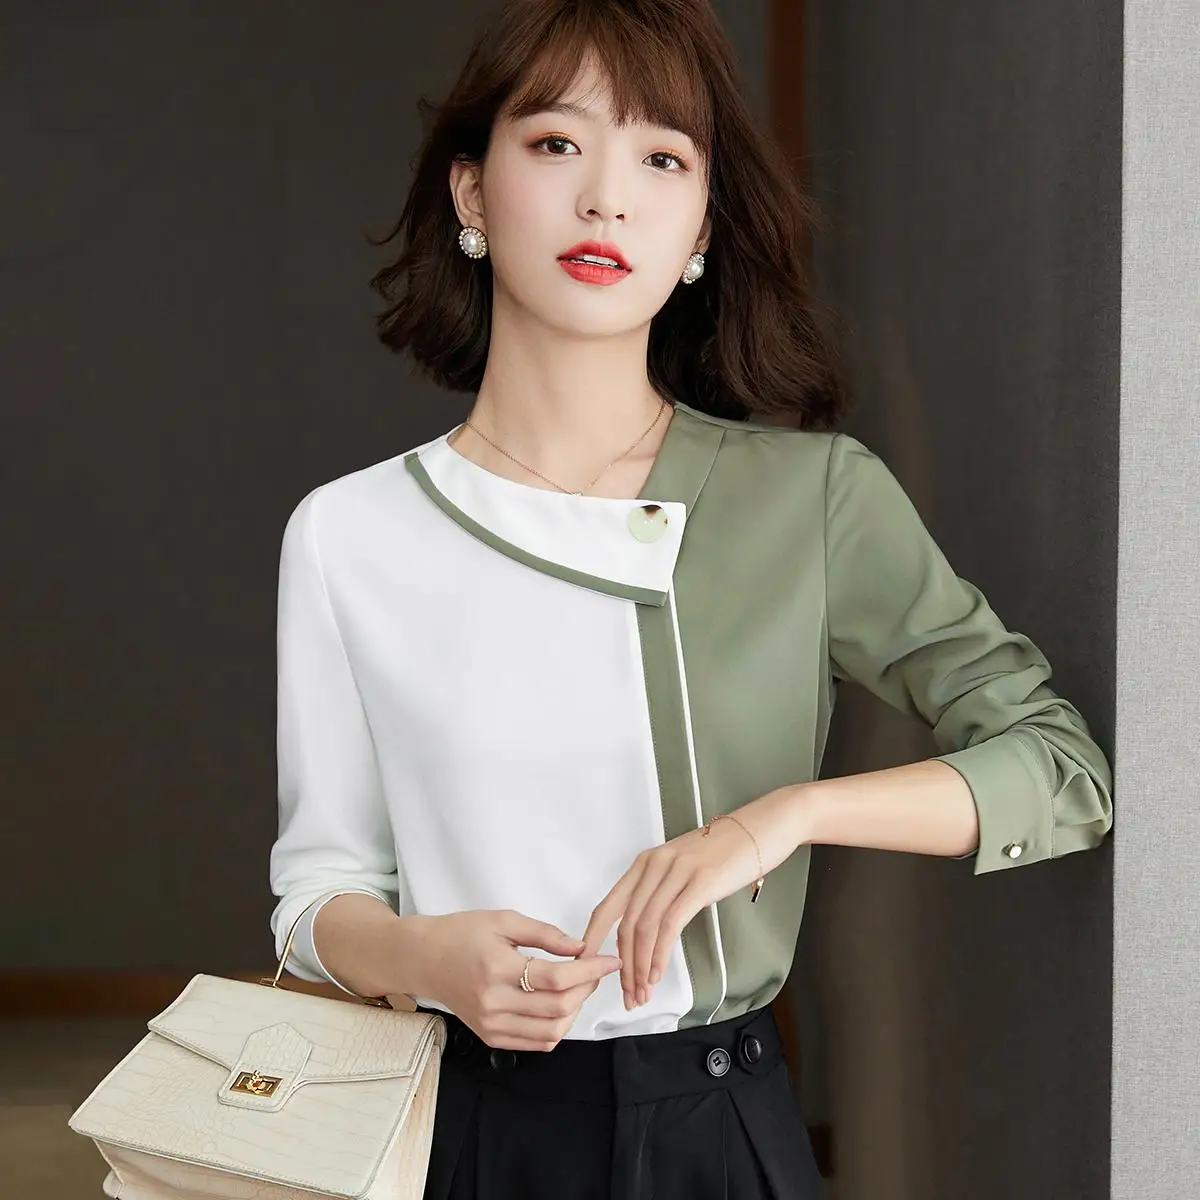 

Женская шифоновая блузка с длинным рукавом, элегантная офисная рубашка с цветными вставками, осень 2021